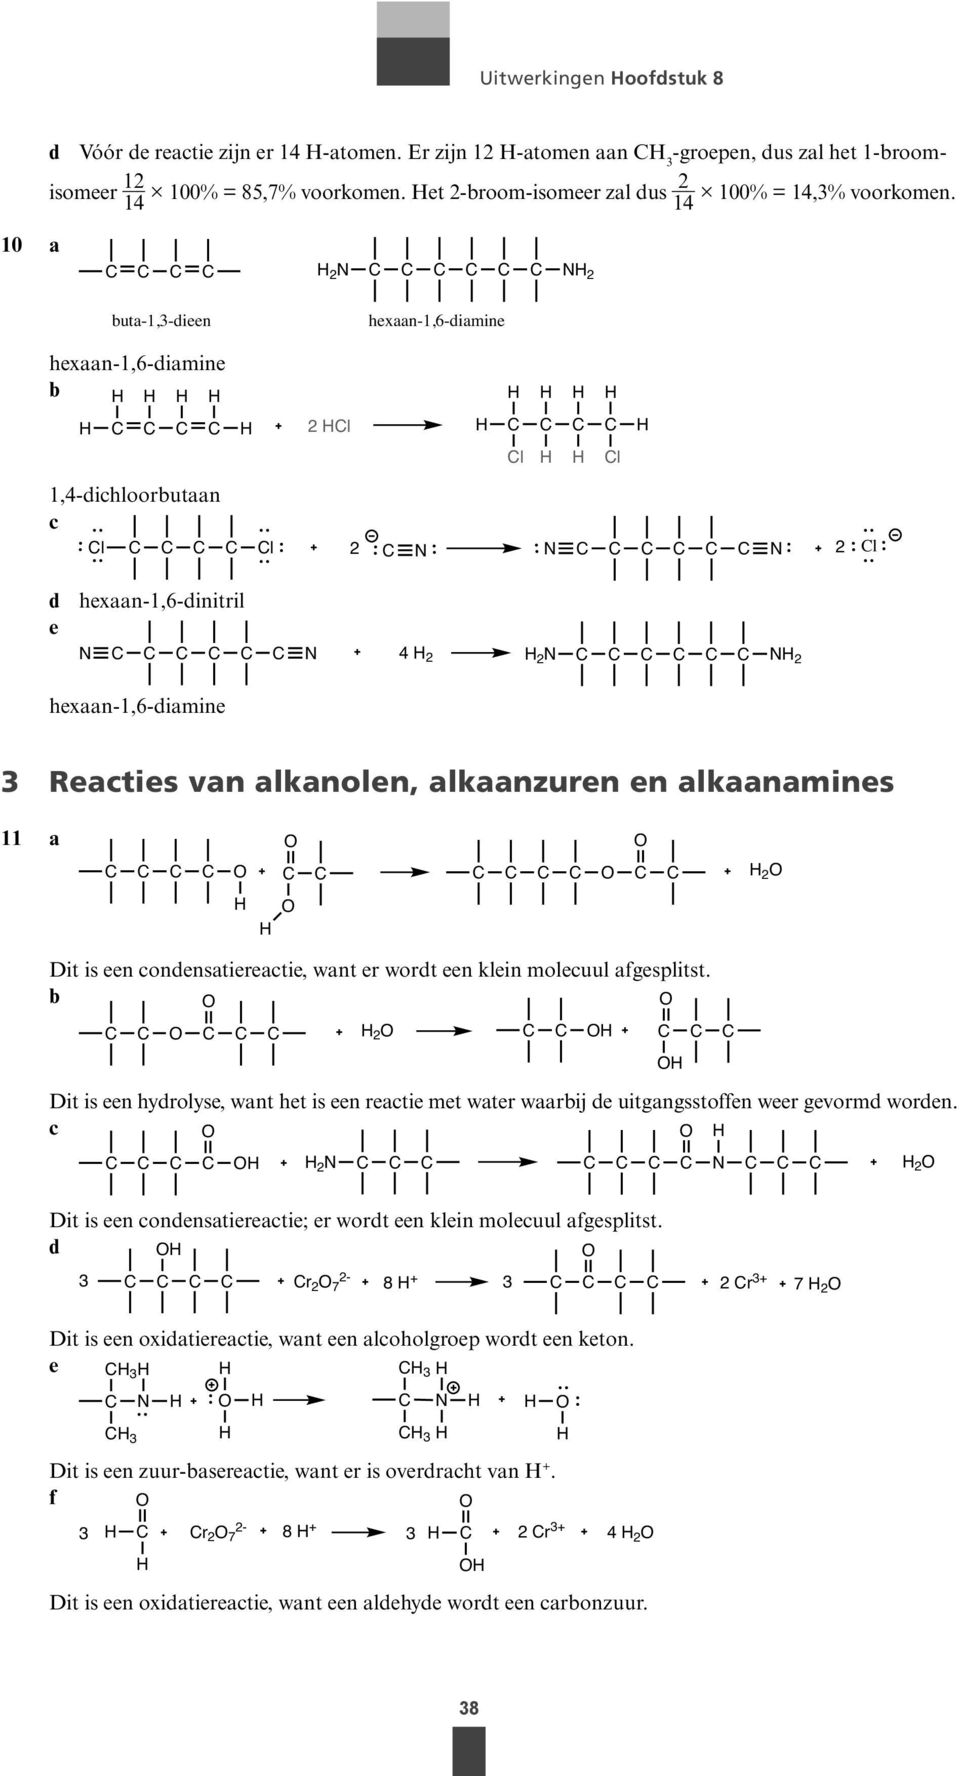 14 10 a 2 N N 2 uta-1,3-dieen hexaan-1,6-diamine hexaan-1,6-diamine 2 l l l 1,4-dichloorutaan c l l 2 N N N 2 l d hexaan-1,6-dinitril e N N 4 2 2 N N 2 hexaan-1,6-diamine 3 Reacties van alkanolen,